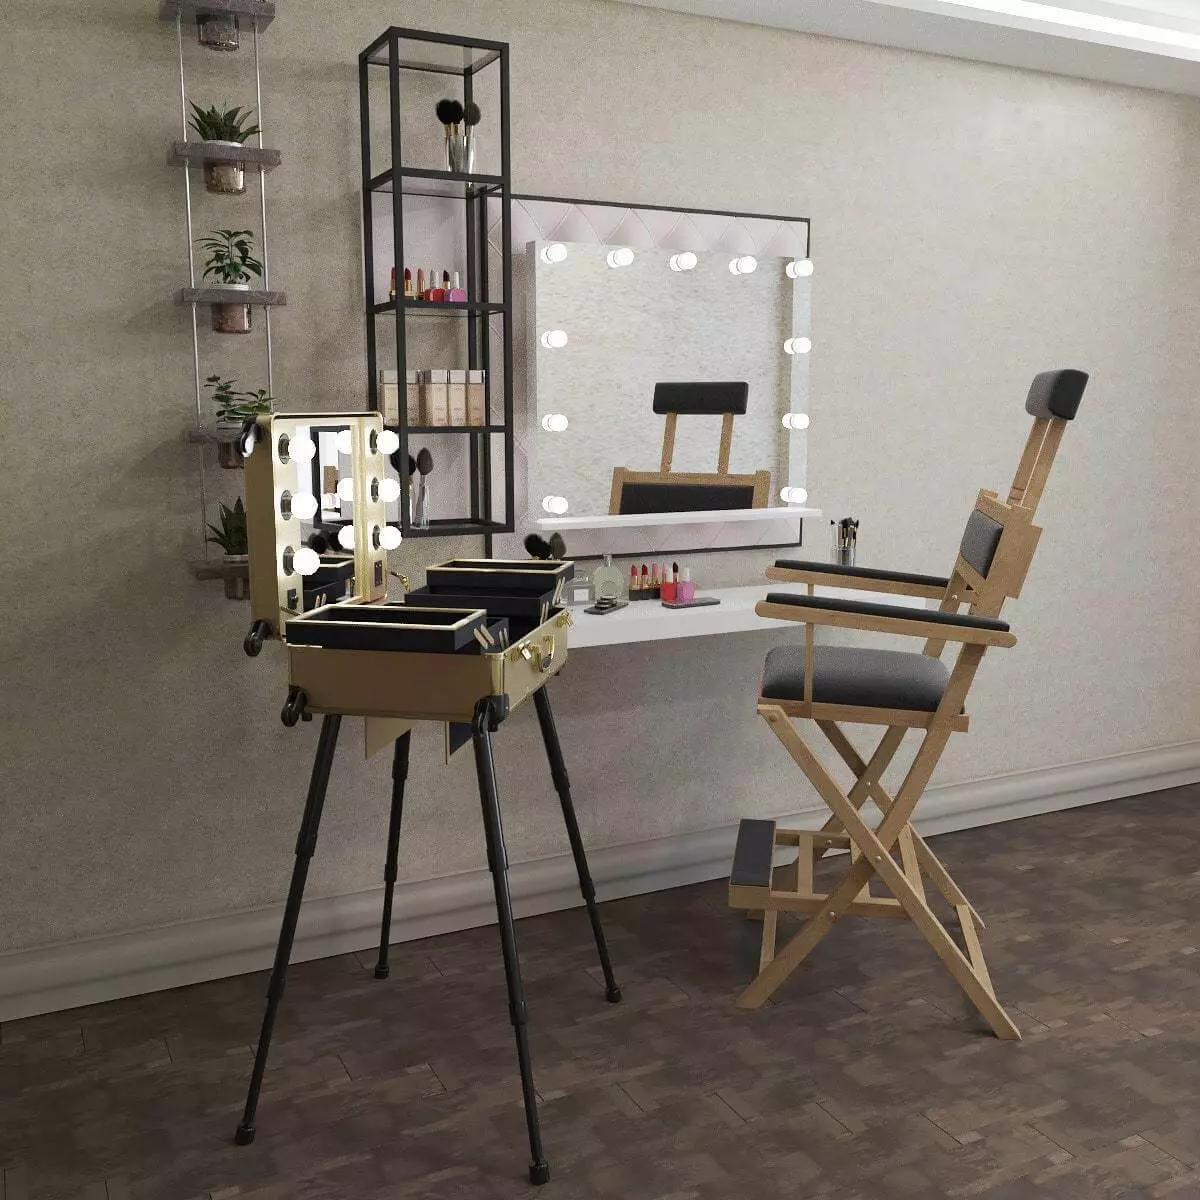 眉毛の職場（36枚の写真）：頭の拘束やその他の家具、自宅のオフィスのデザインを備えた椅子の選択。装備方法？ 7568_9